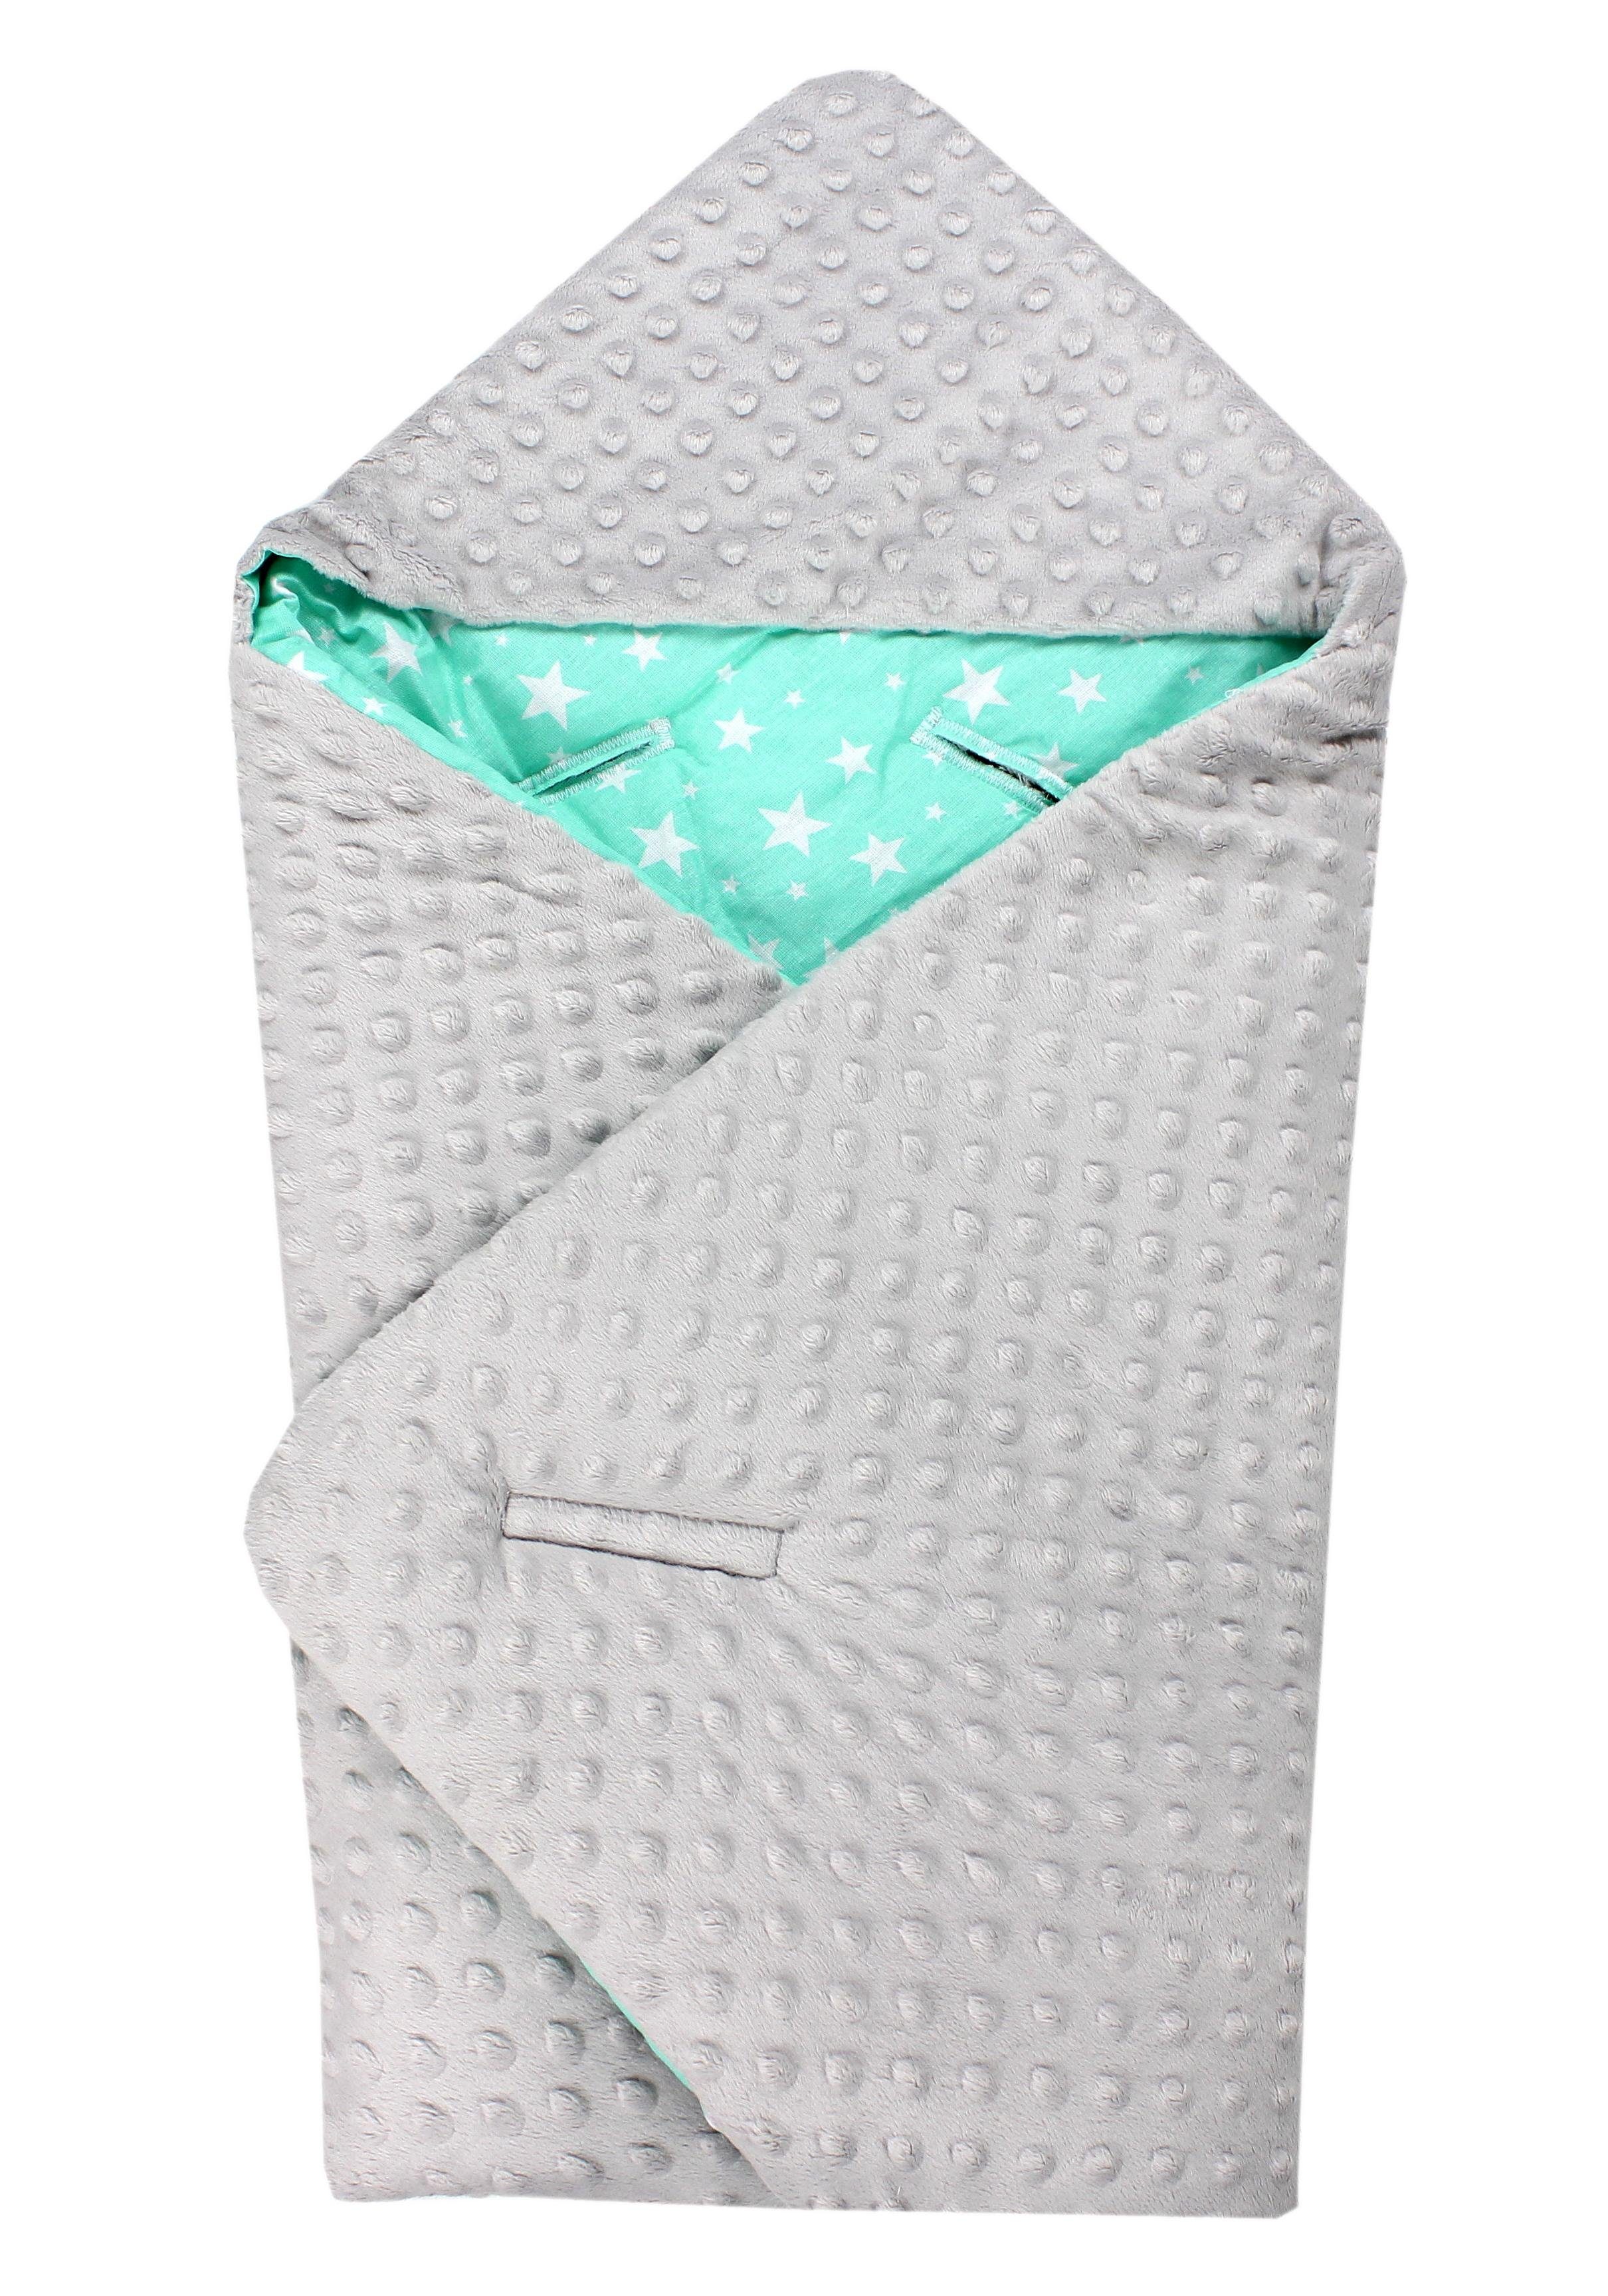 Einschlagdecke Baby Winter Einschlagdecke für Babyschale Wickeldecke Decke 75 x 75, TupTam Sternchen Mint / Grau